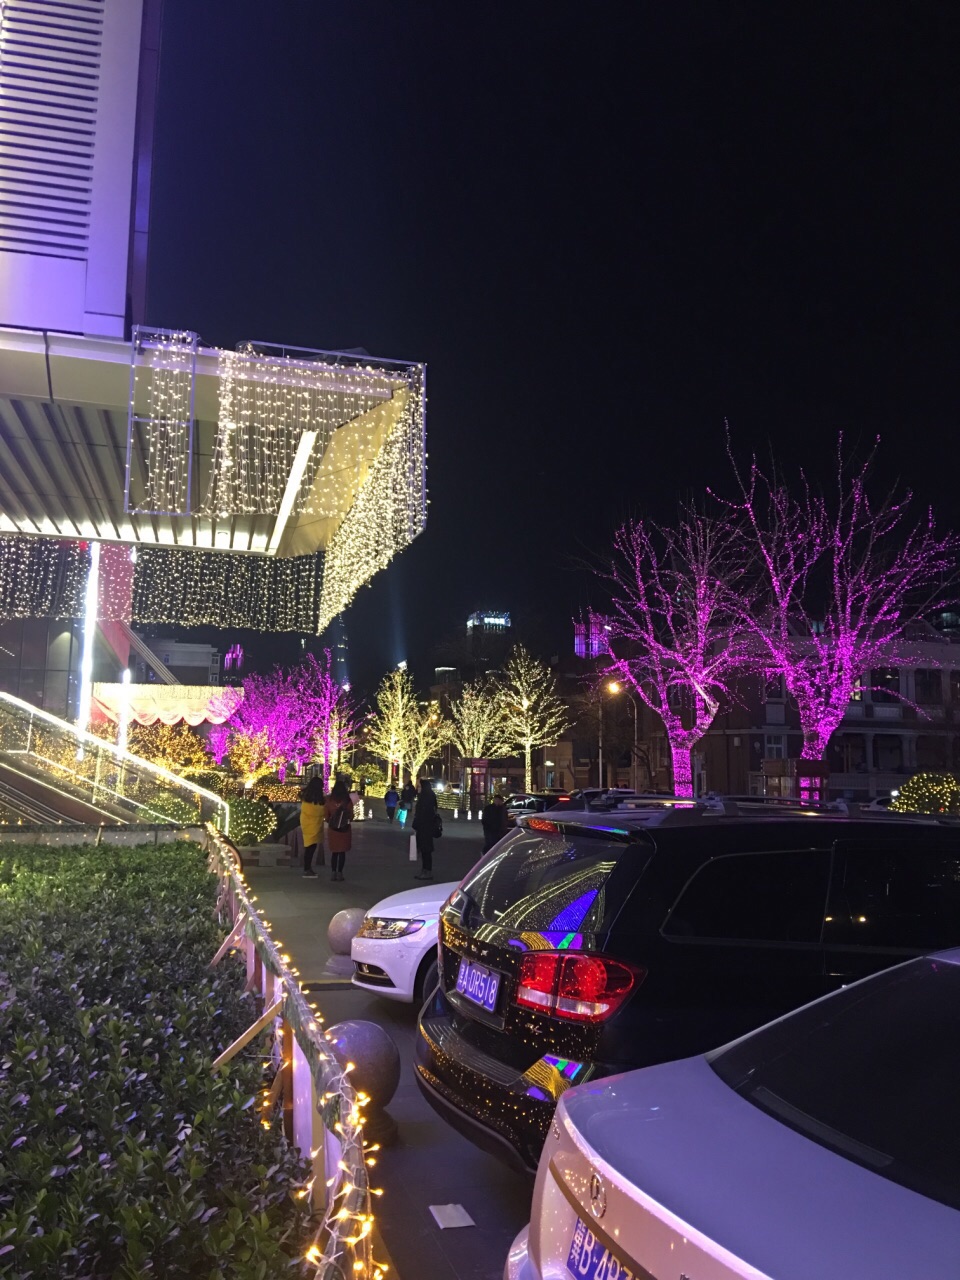 天津滨江道夜景图片图片